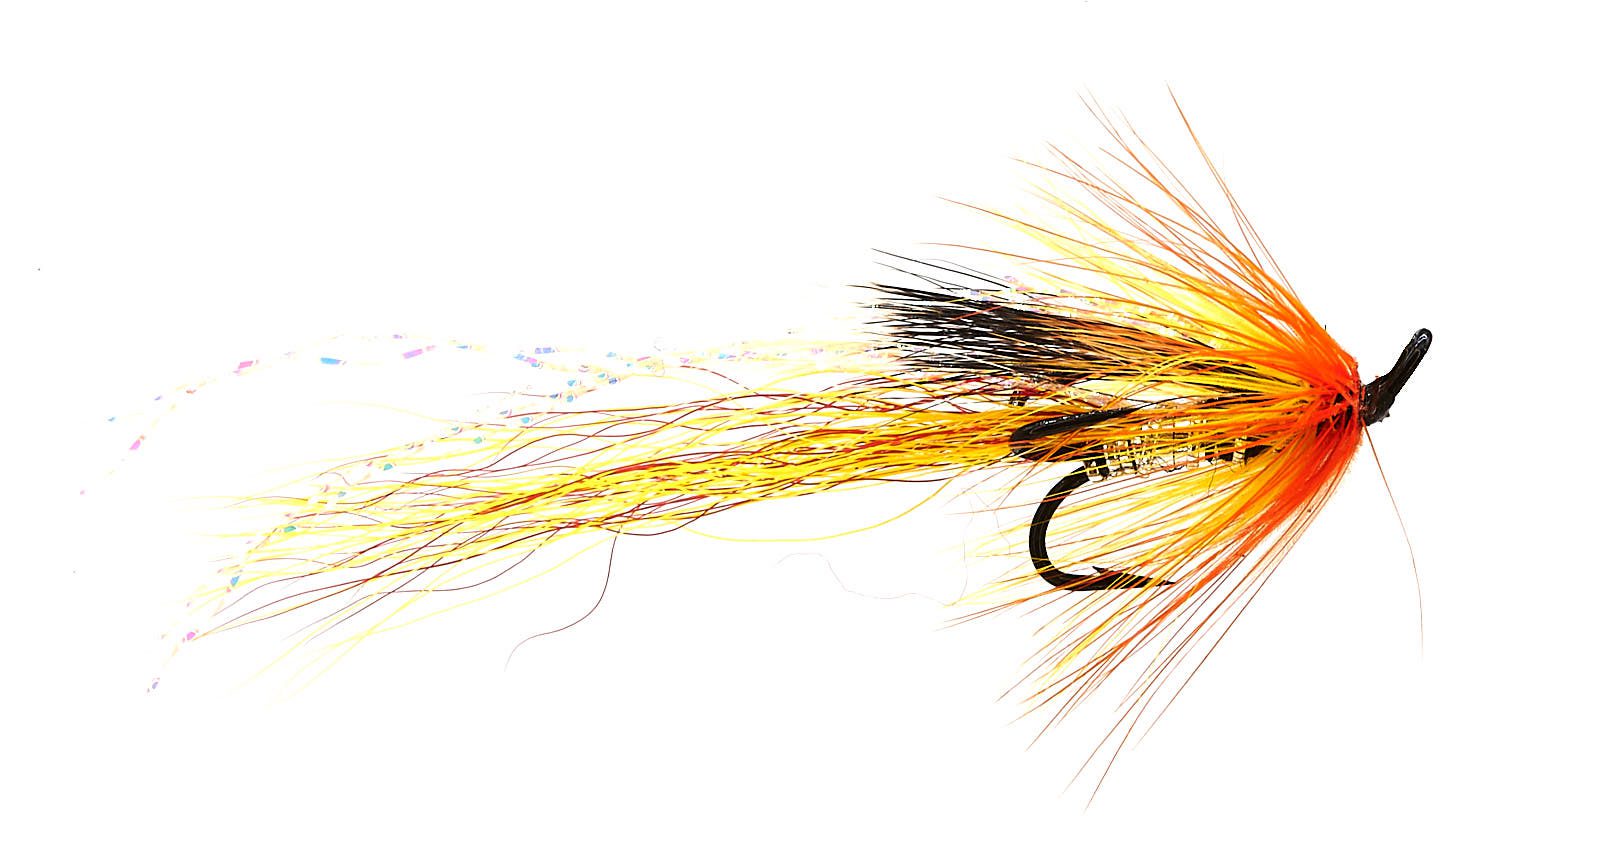 Cascade Treble Hook fly # 12